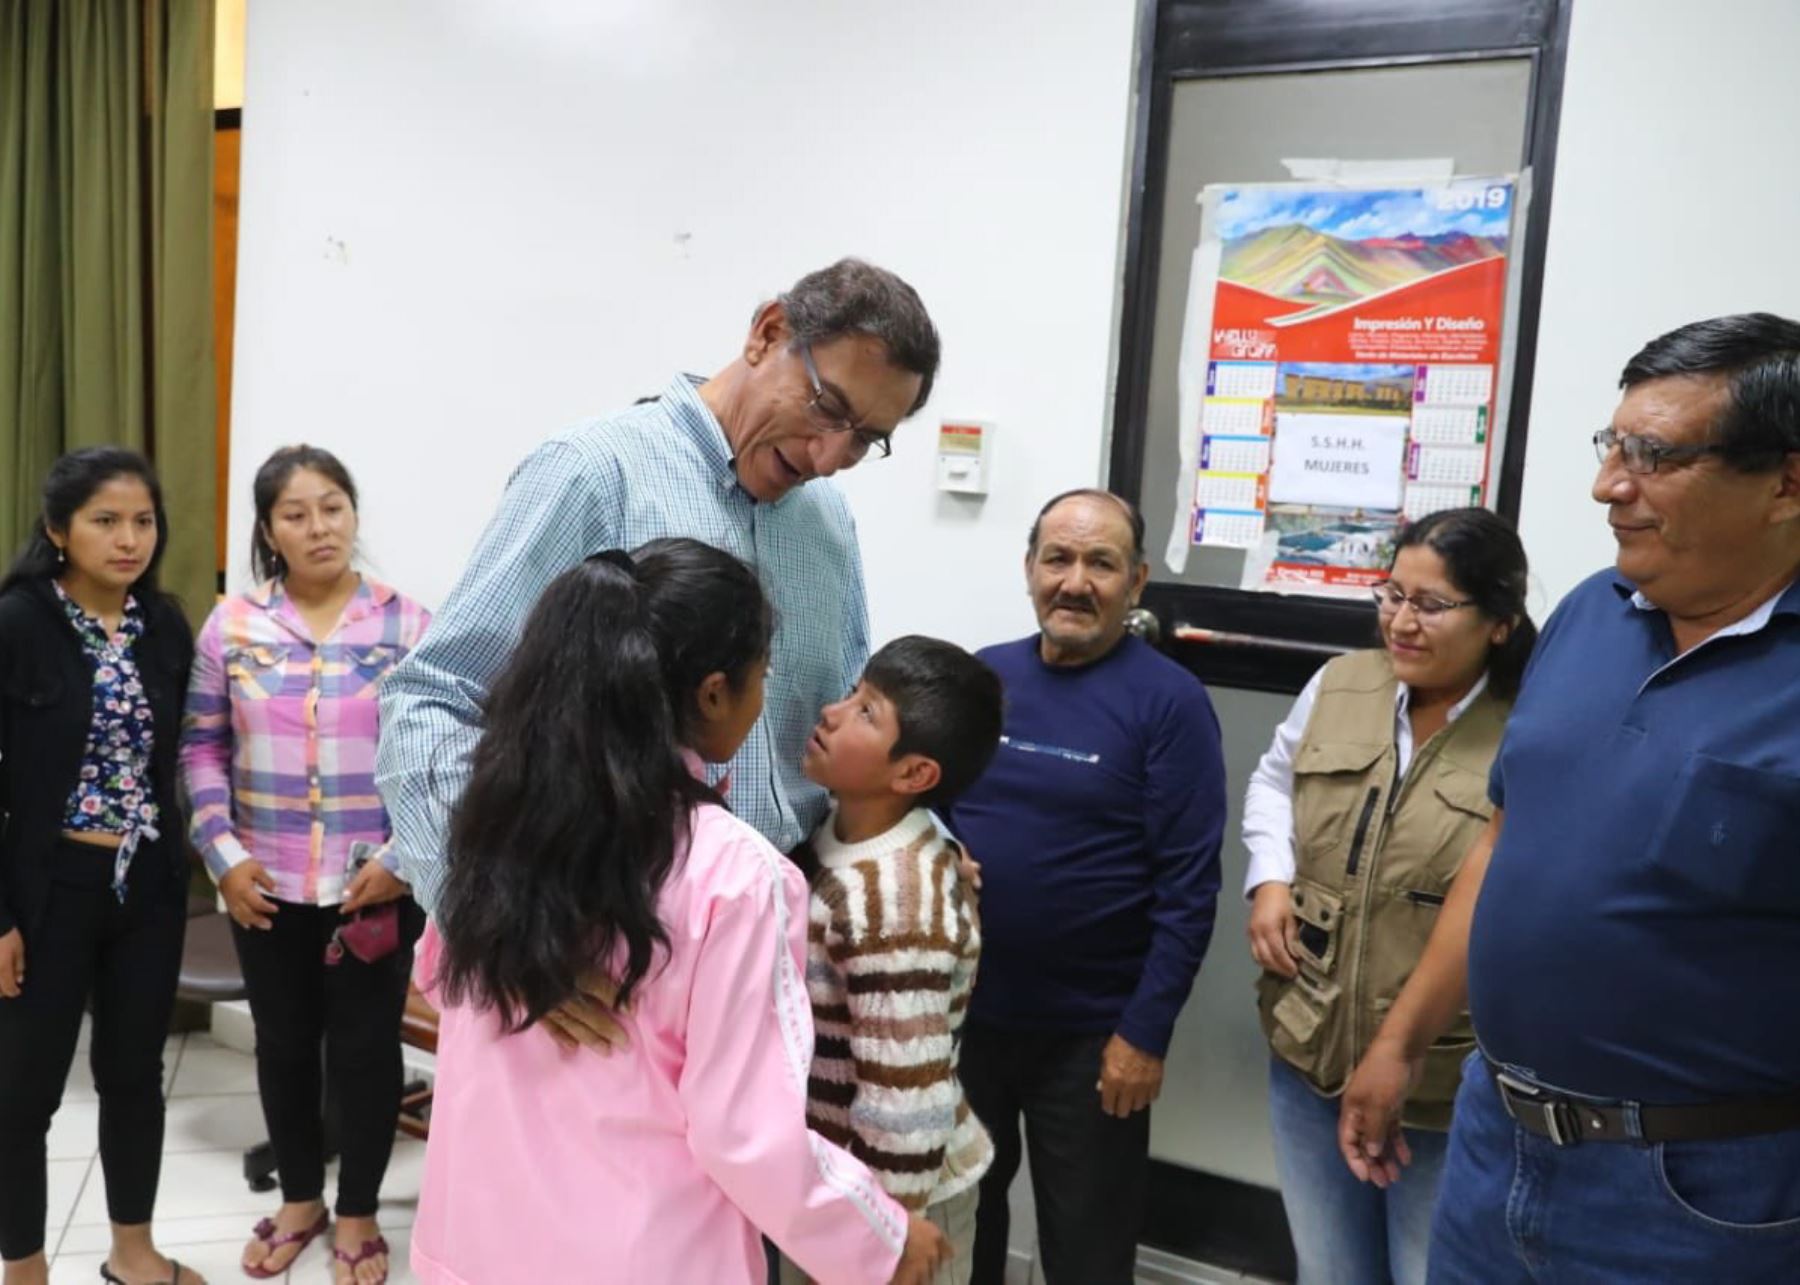 Presidente Martín Vizcarra se reunió con menores damnificados por las lluvias en Santa Teresa.